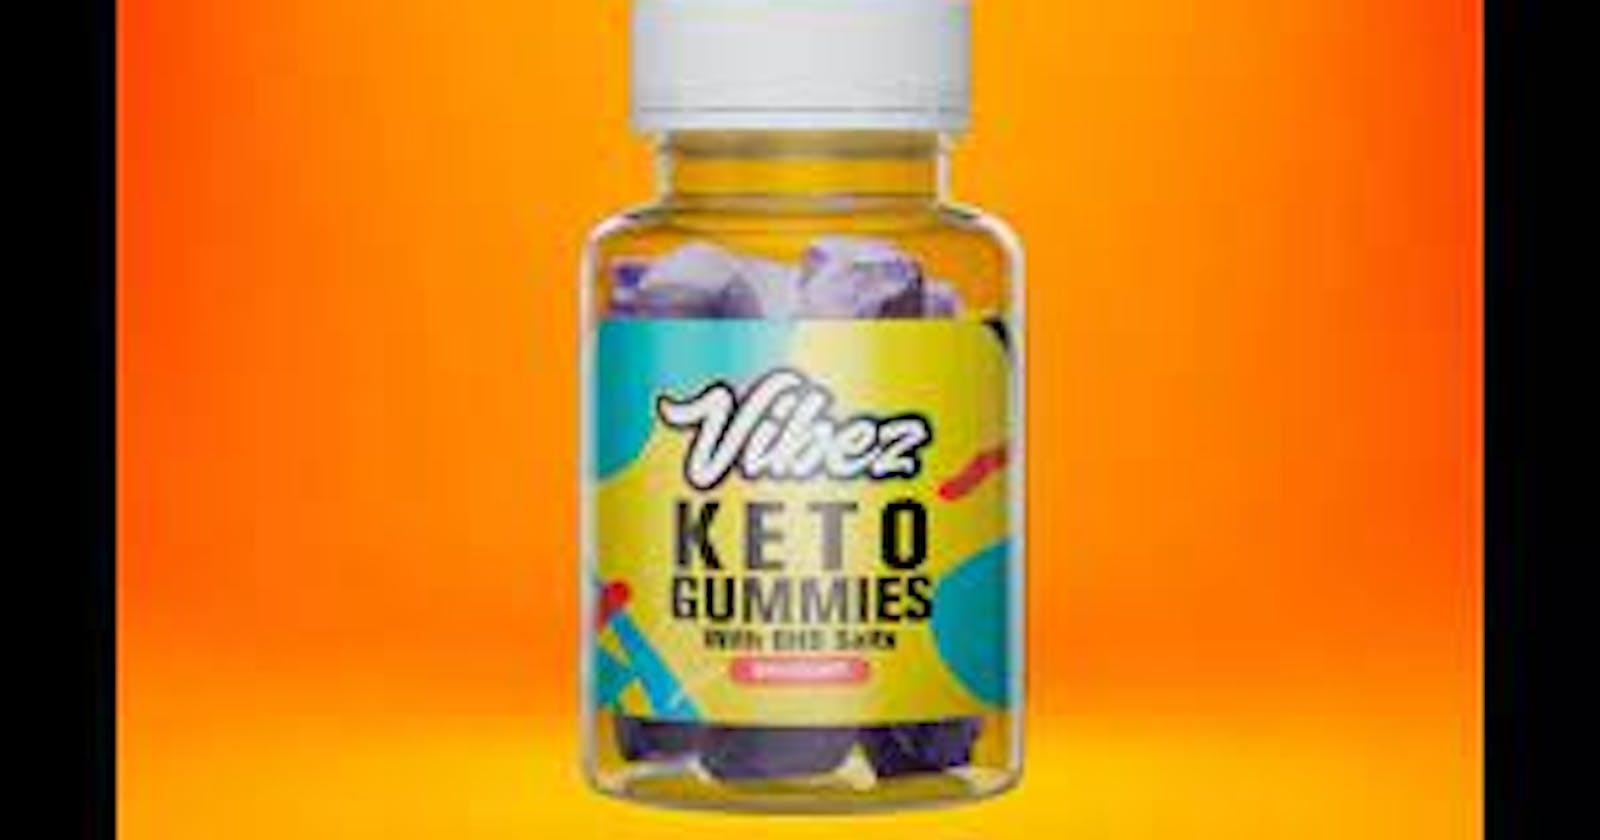 Vibez CBD Gummies Official Product